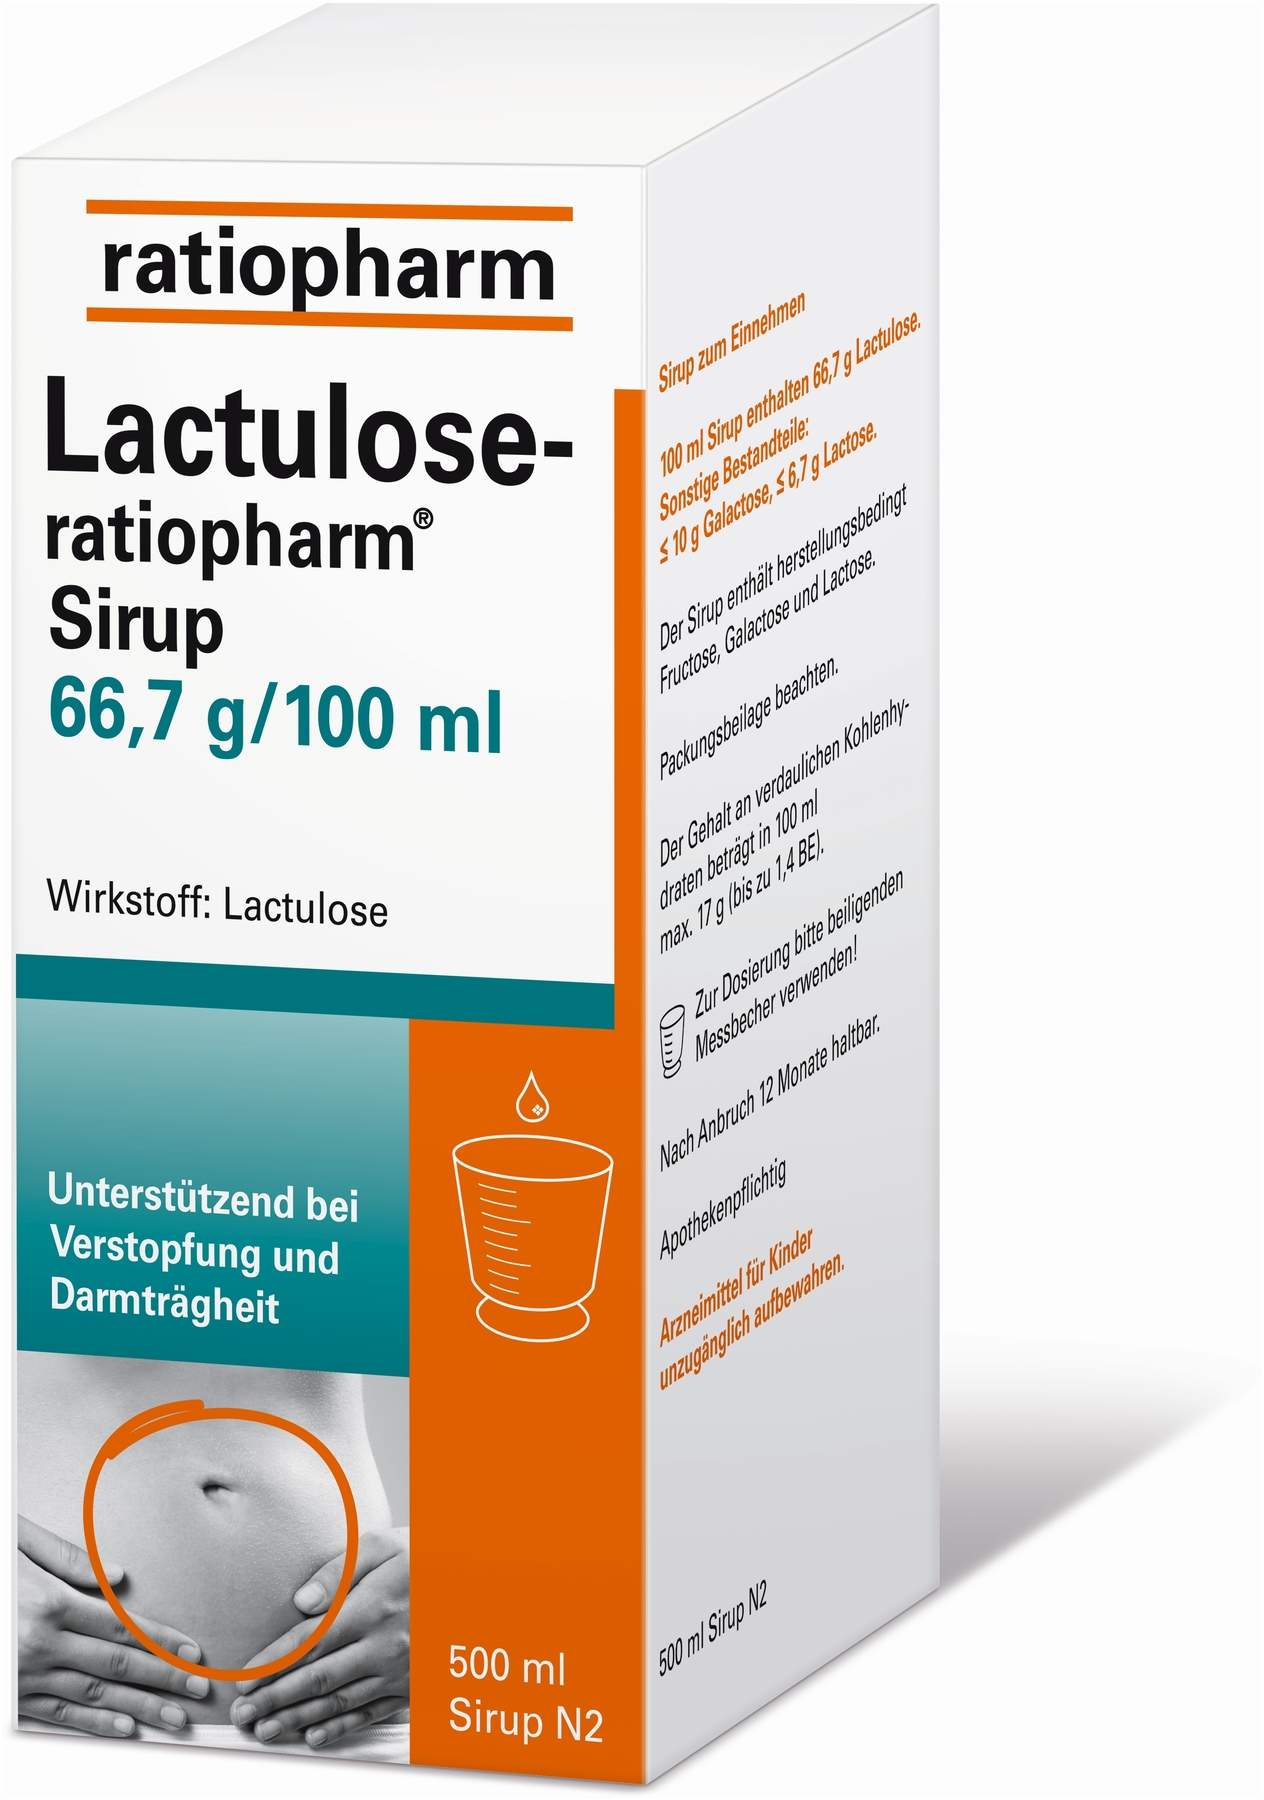 Lactulose-ratiopharm Sirup 66,7 g pro 100 ml 500 ml Sirup kaufen ...